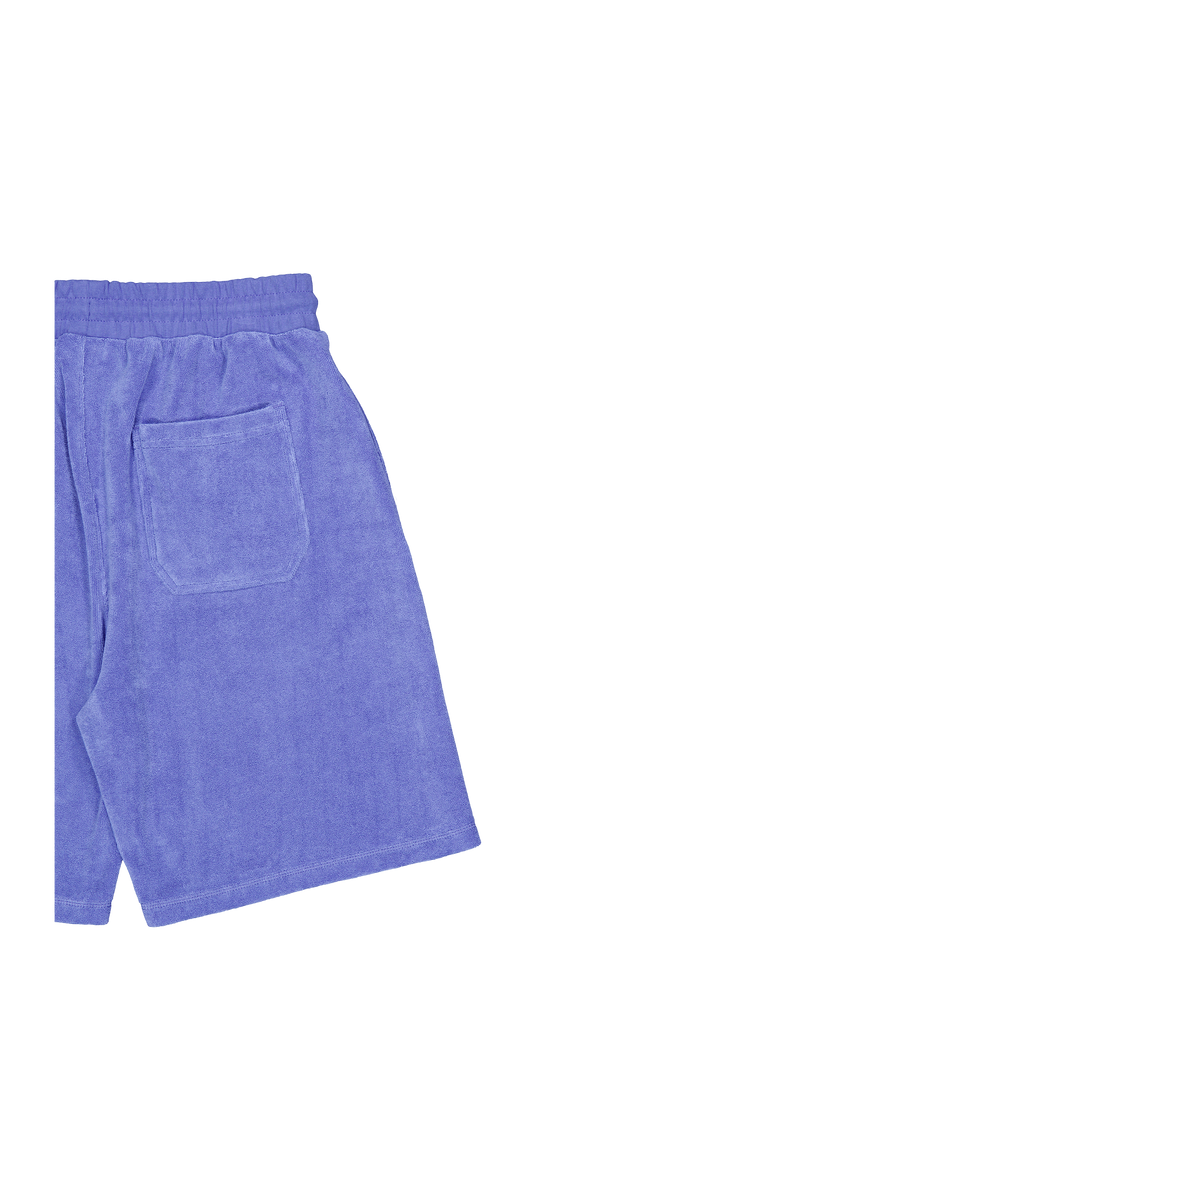 Viste Jog Shorts Iris Blue